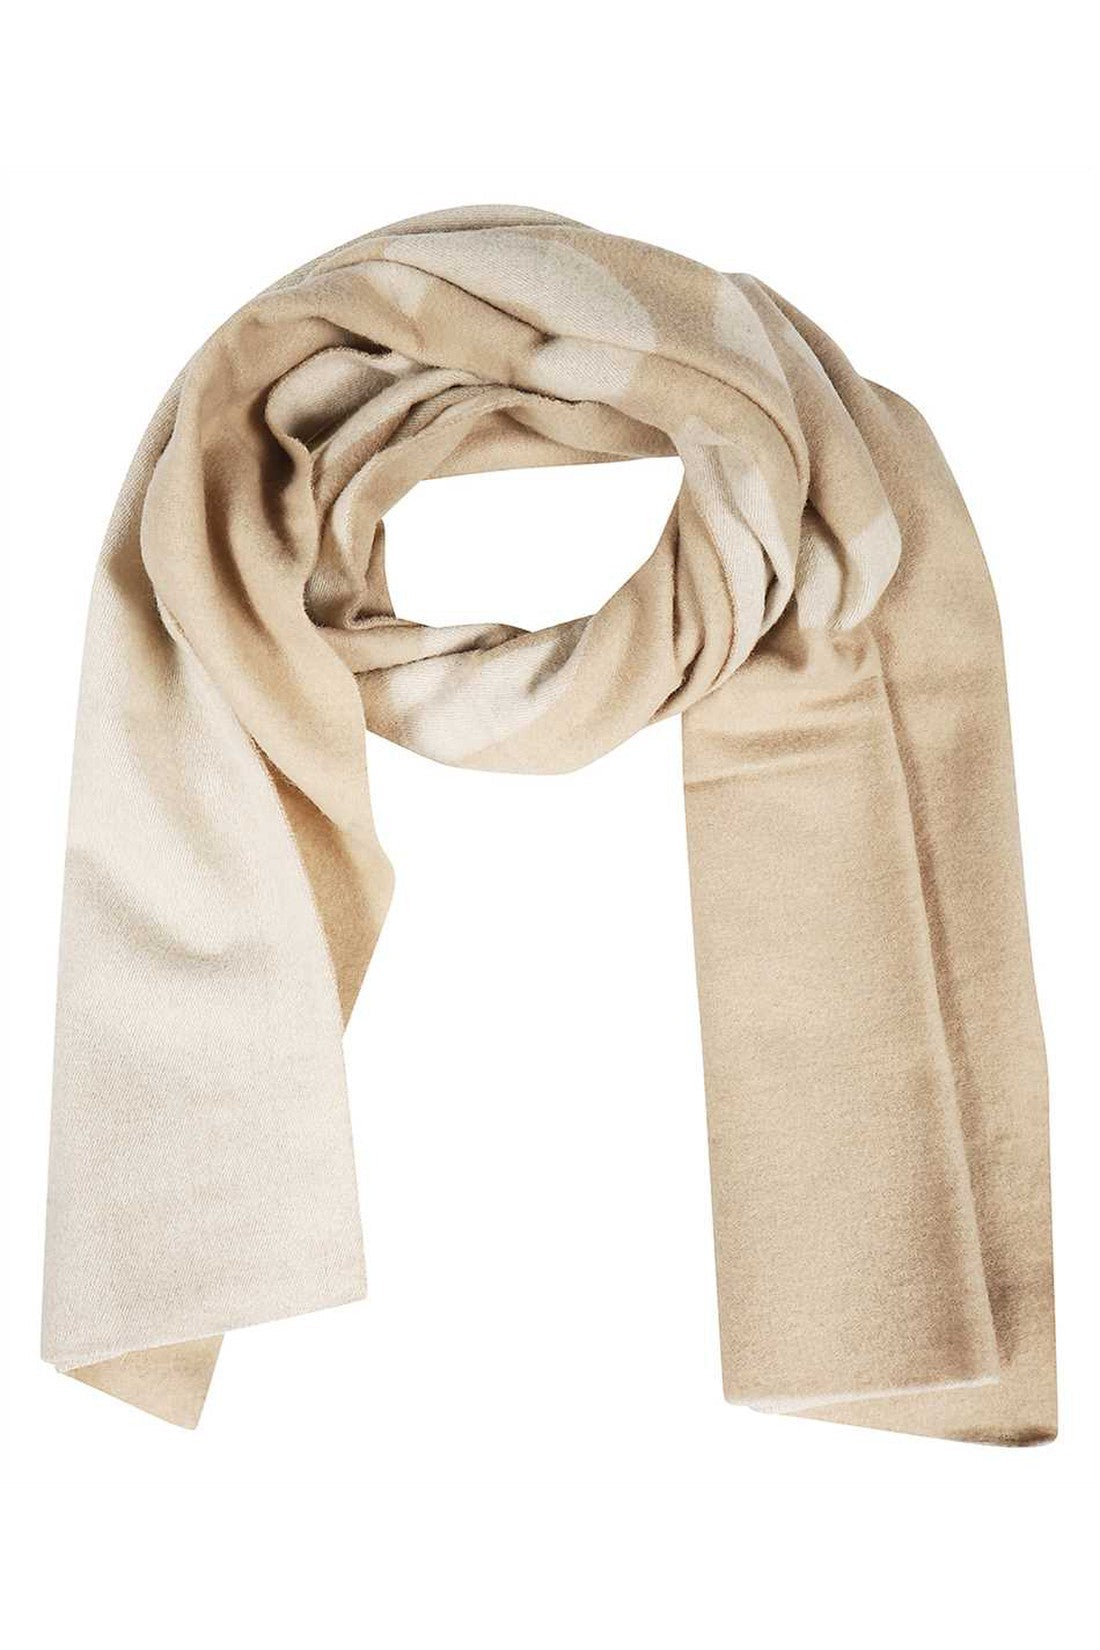 Wool scarf-Les Deux-OUTLET-SALE-TU-ARCHIVIST